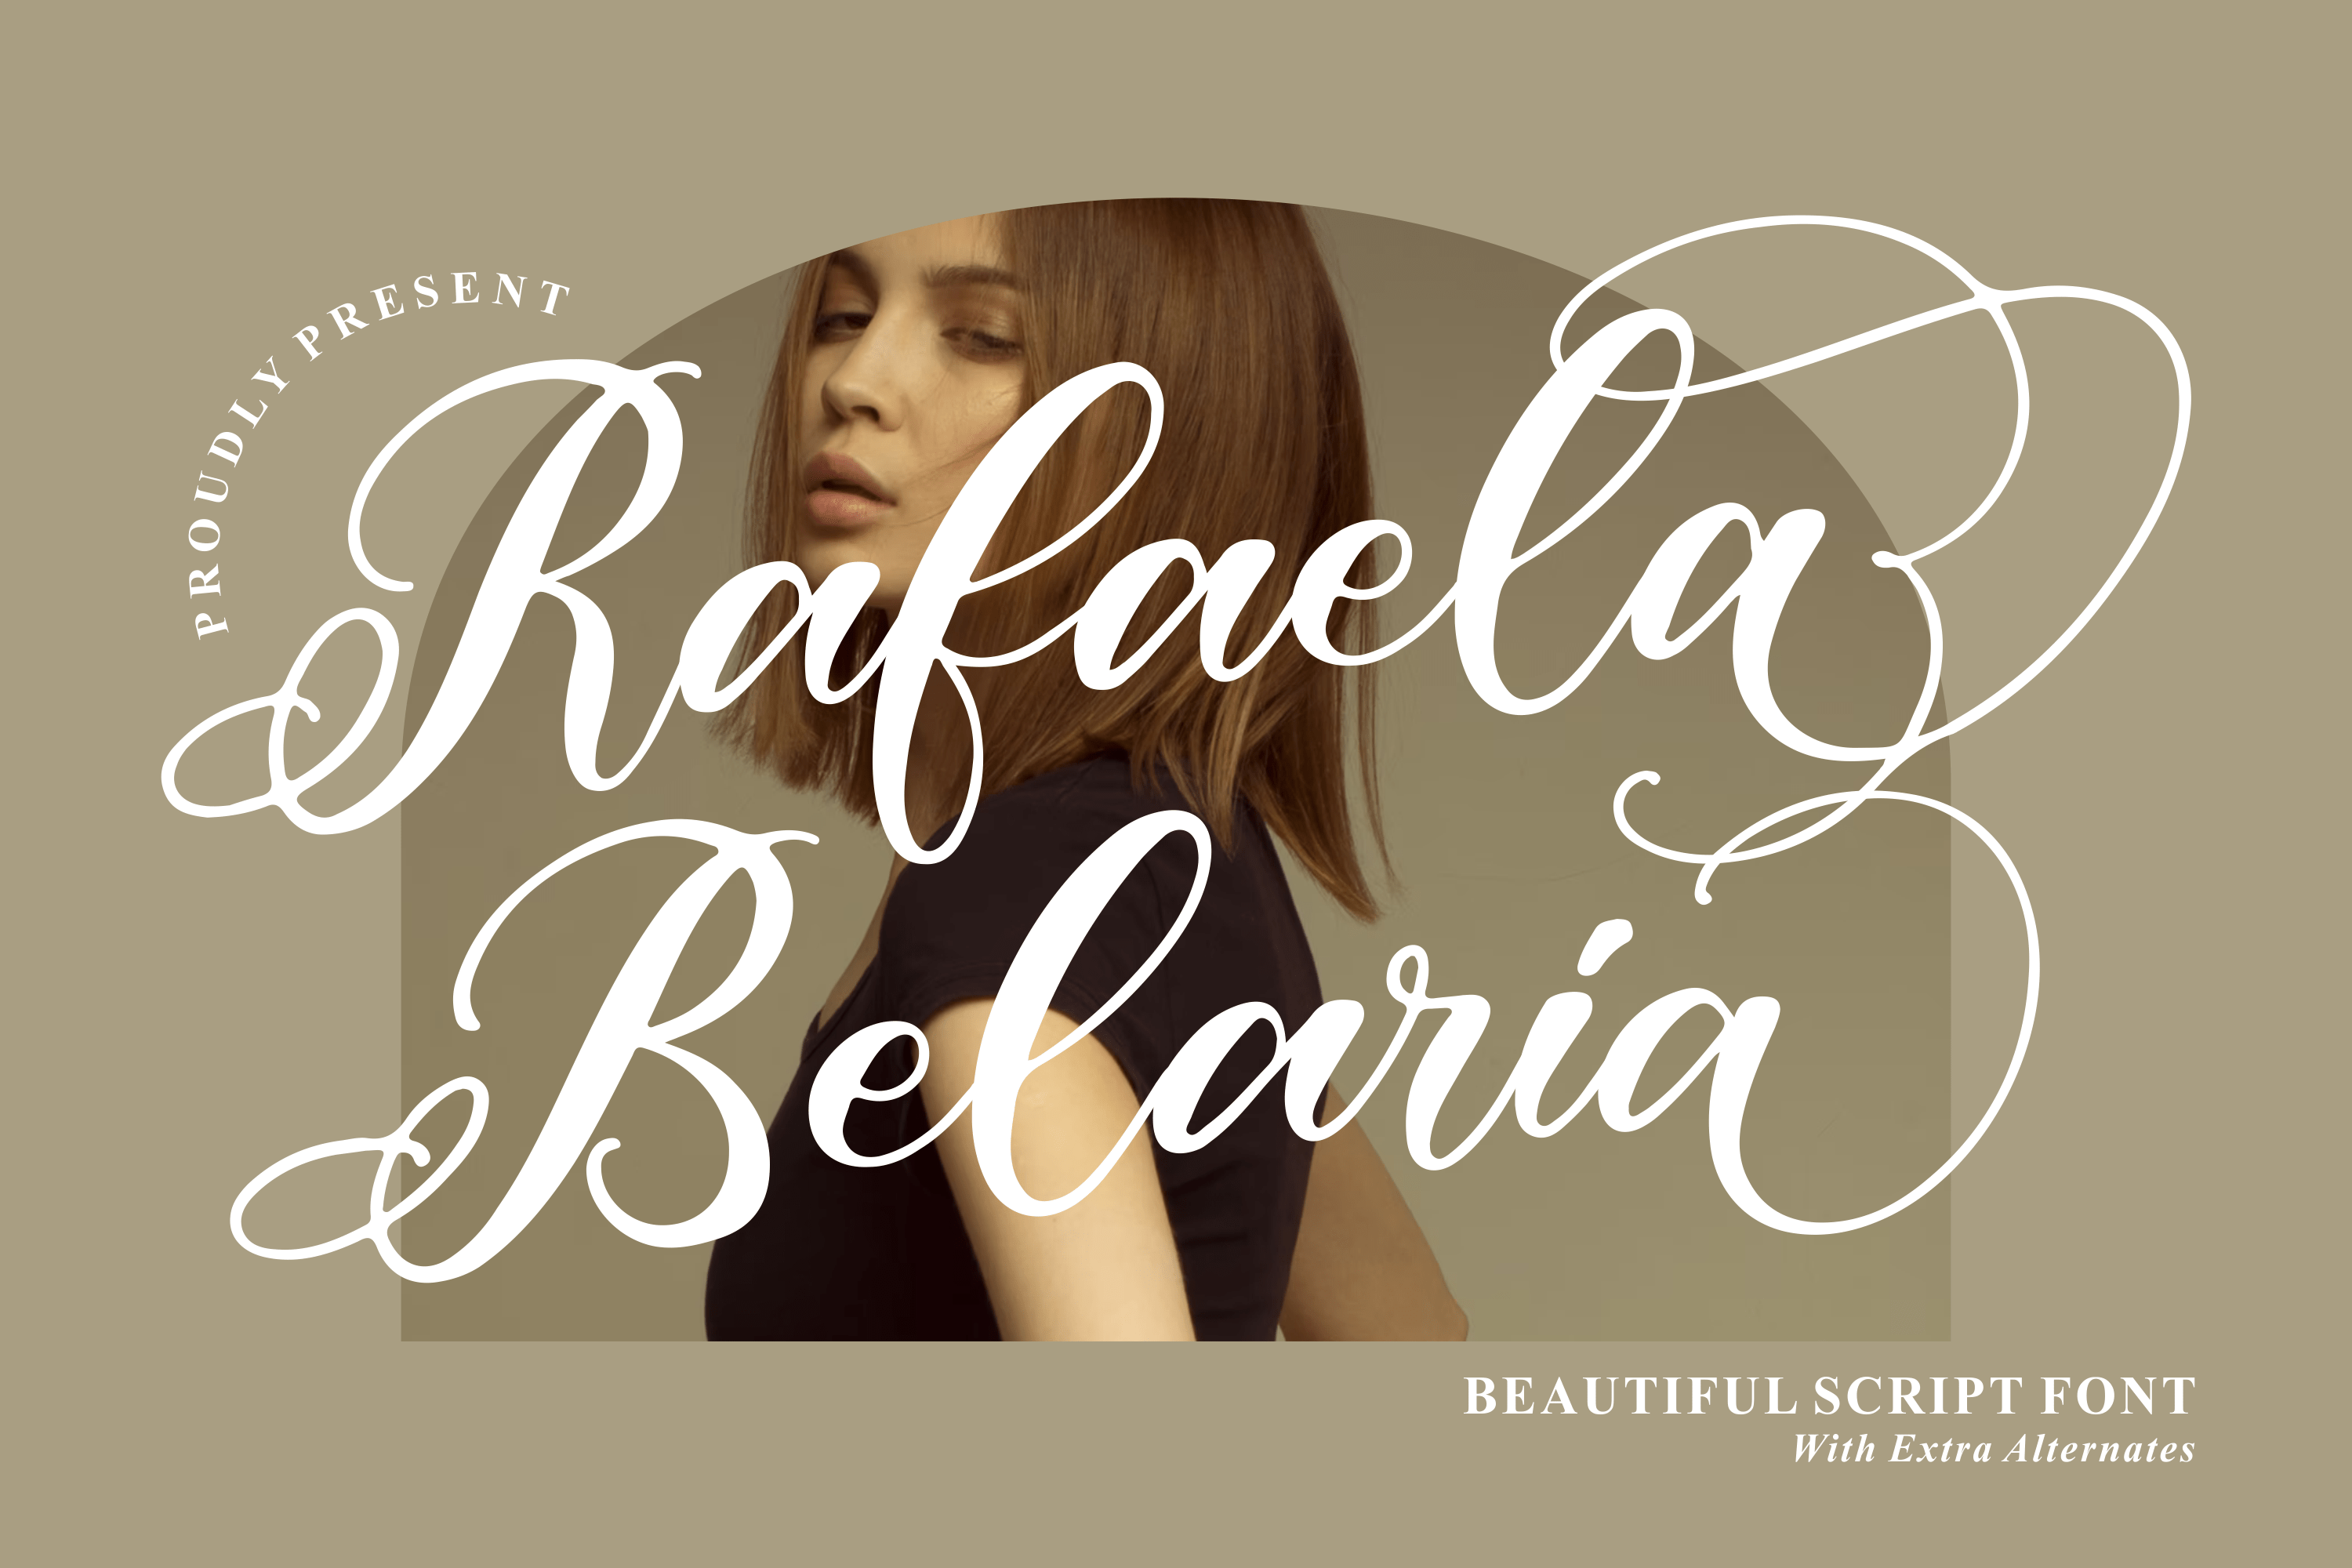 Rafaela Belaria